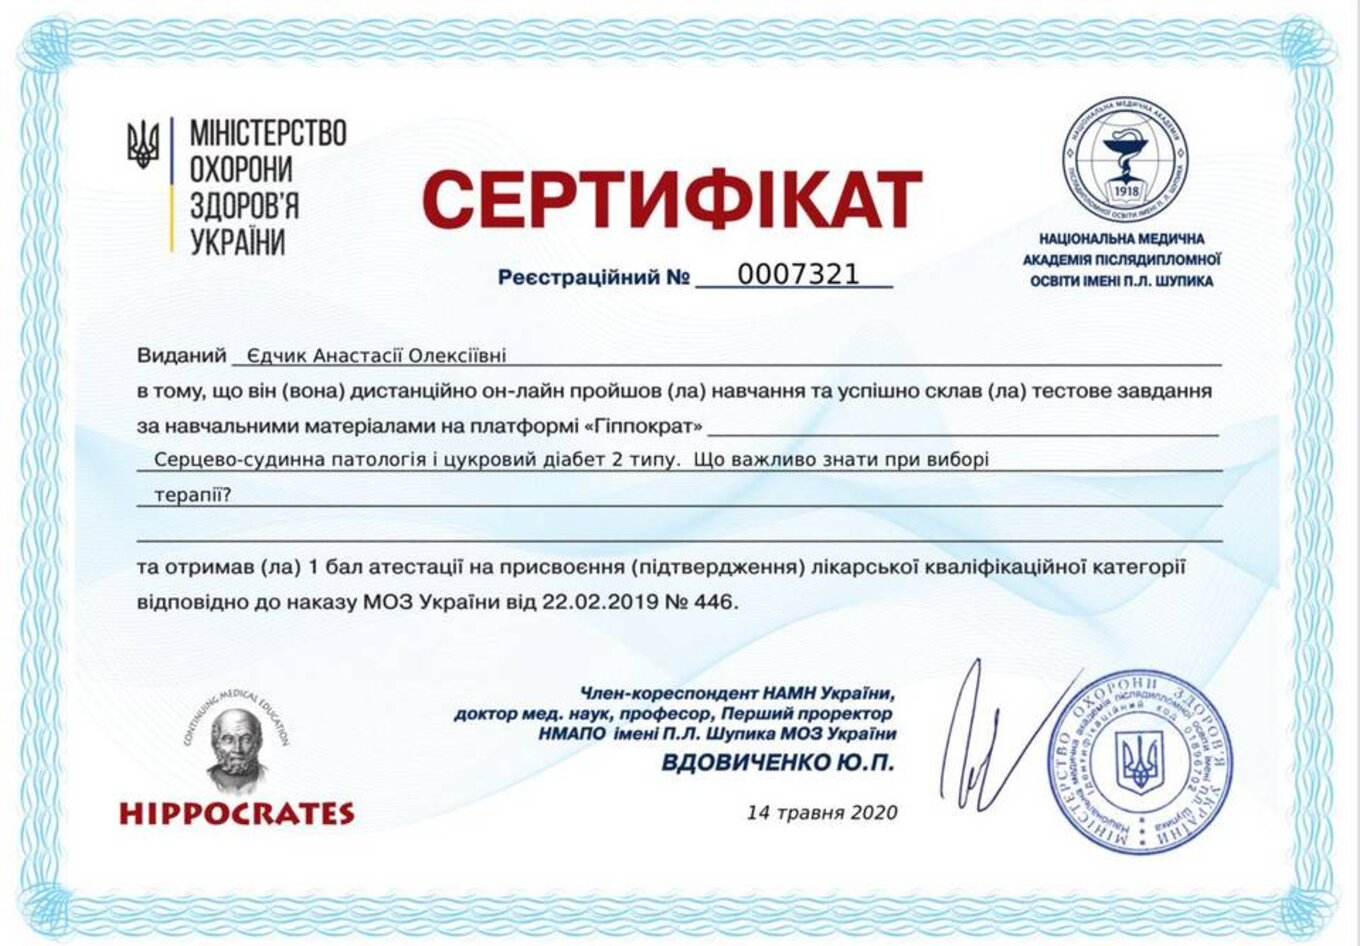 certificates/yedchik-anastasiya-oleksiyivna/erc-edchik-cert-12.jpg